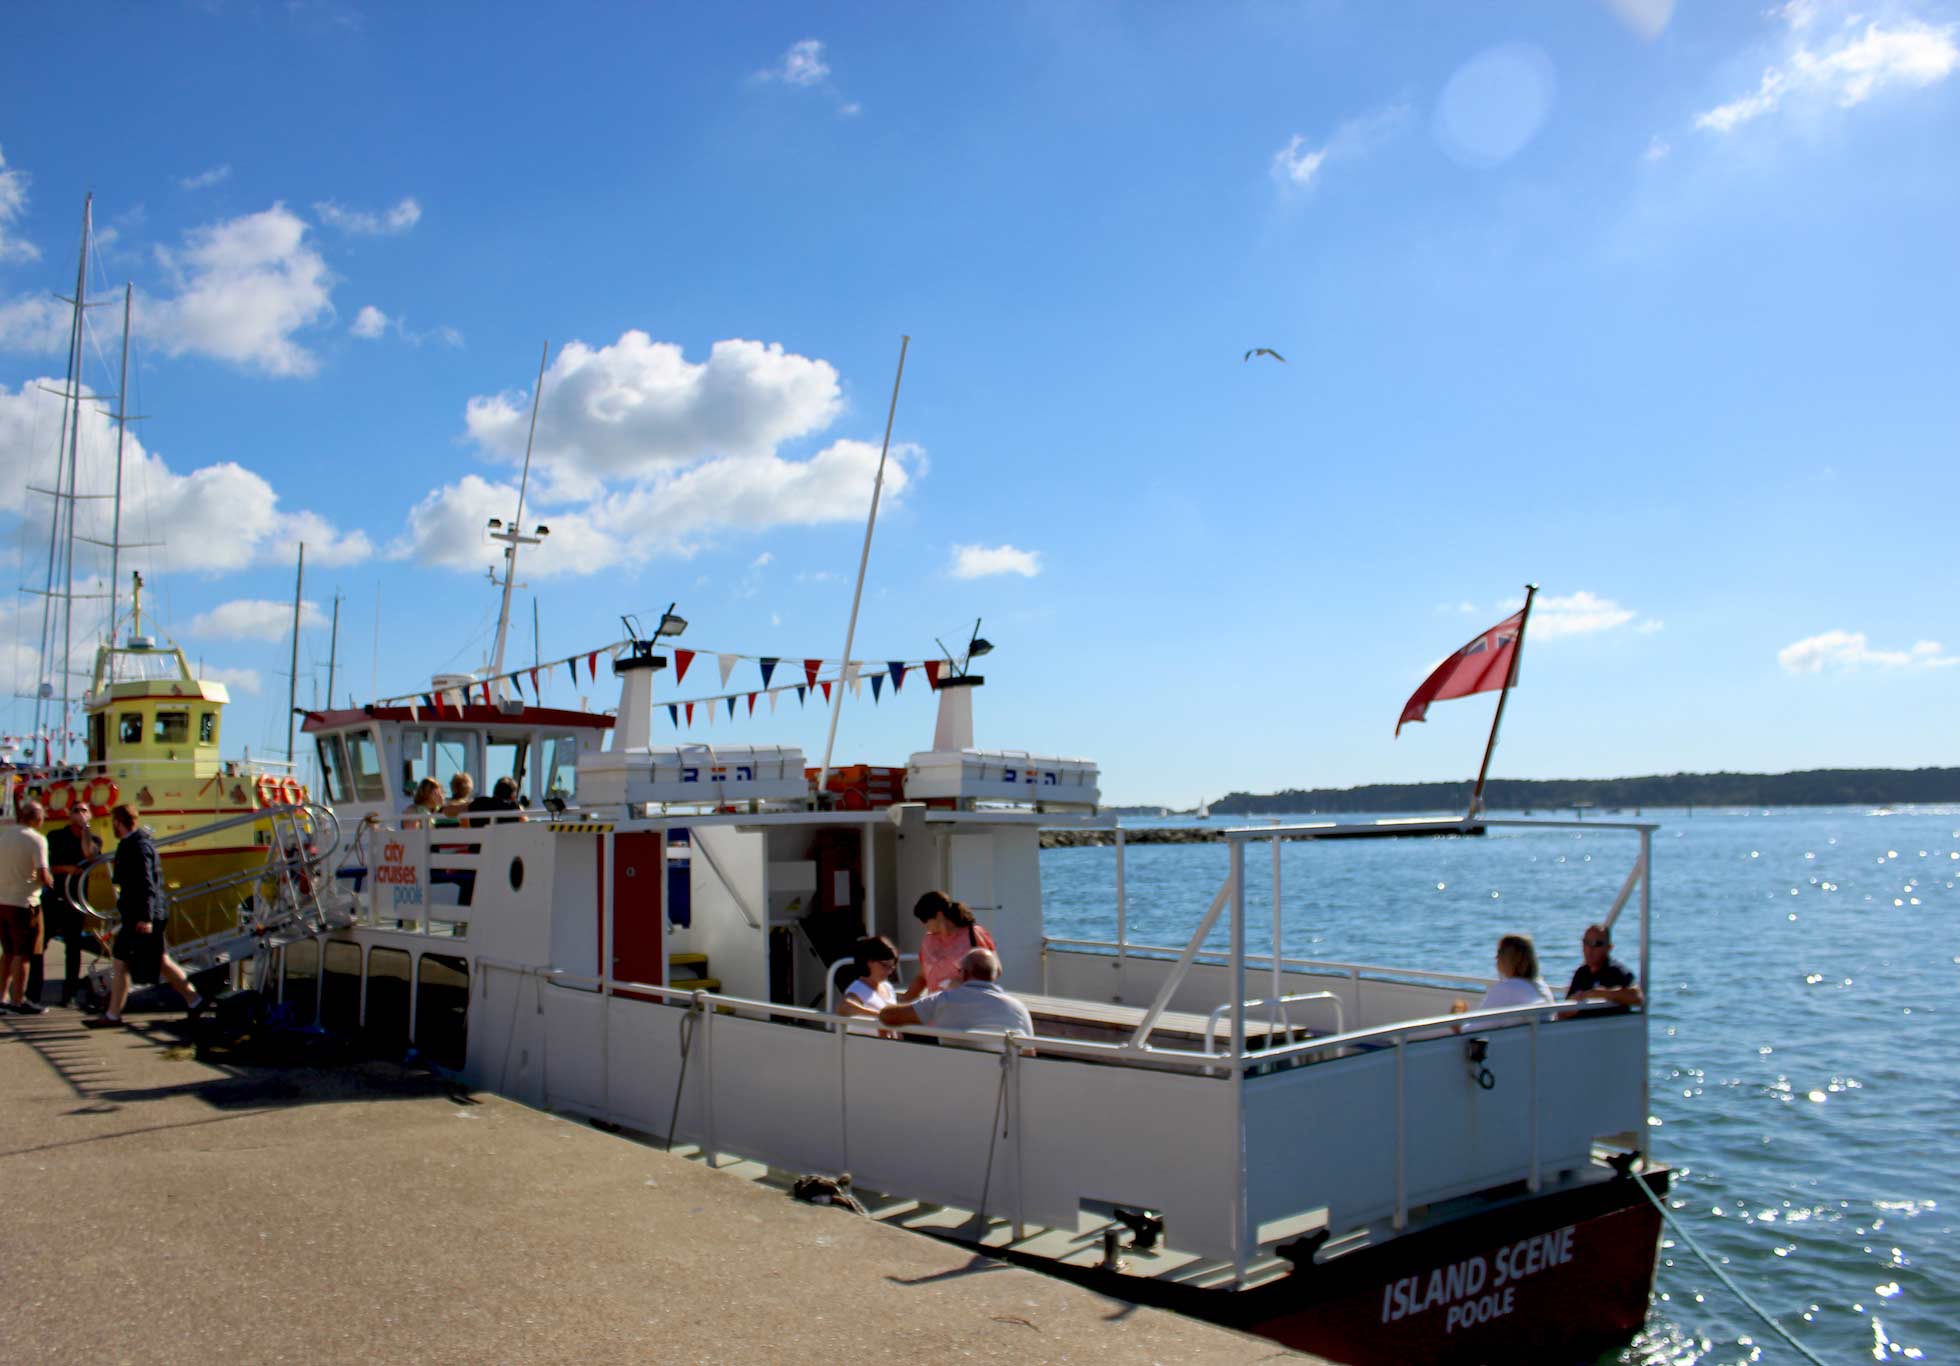 Ilha Cena um pequeno barco atracado em Poole com pessoas sentadas no convés.